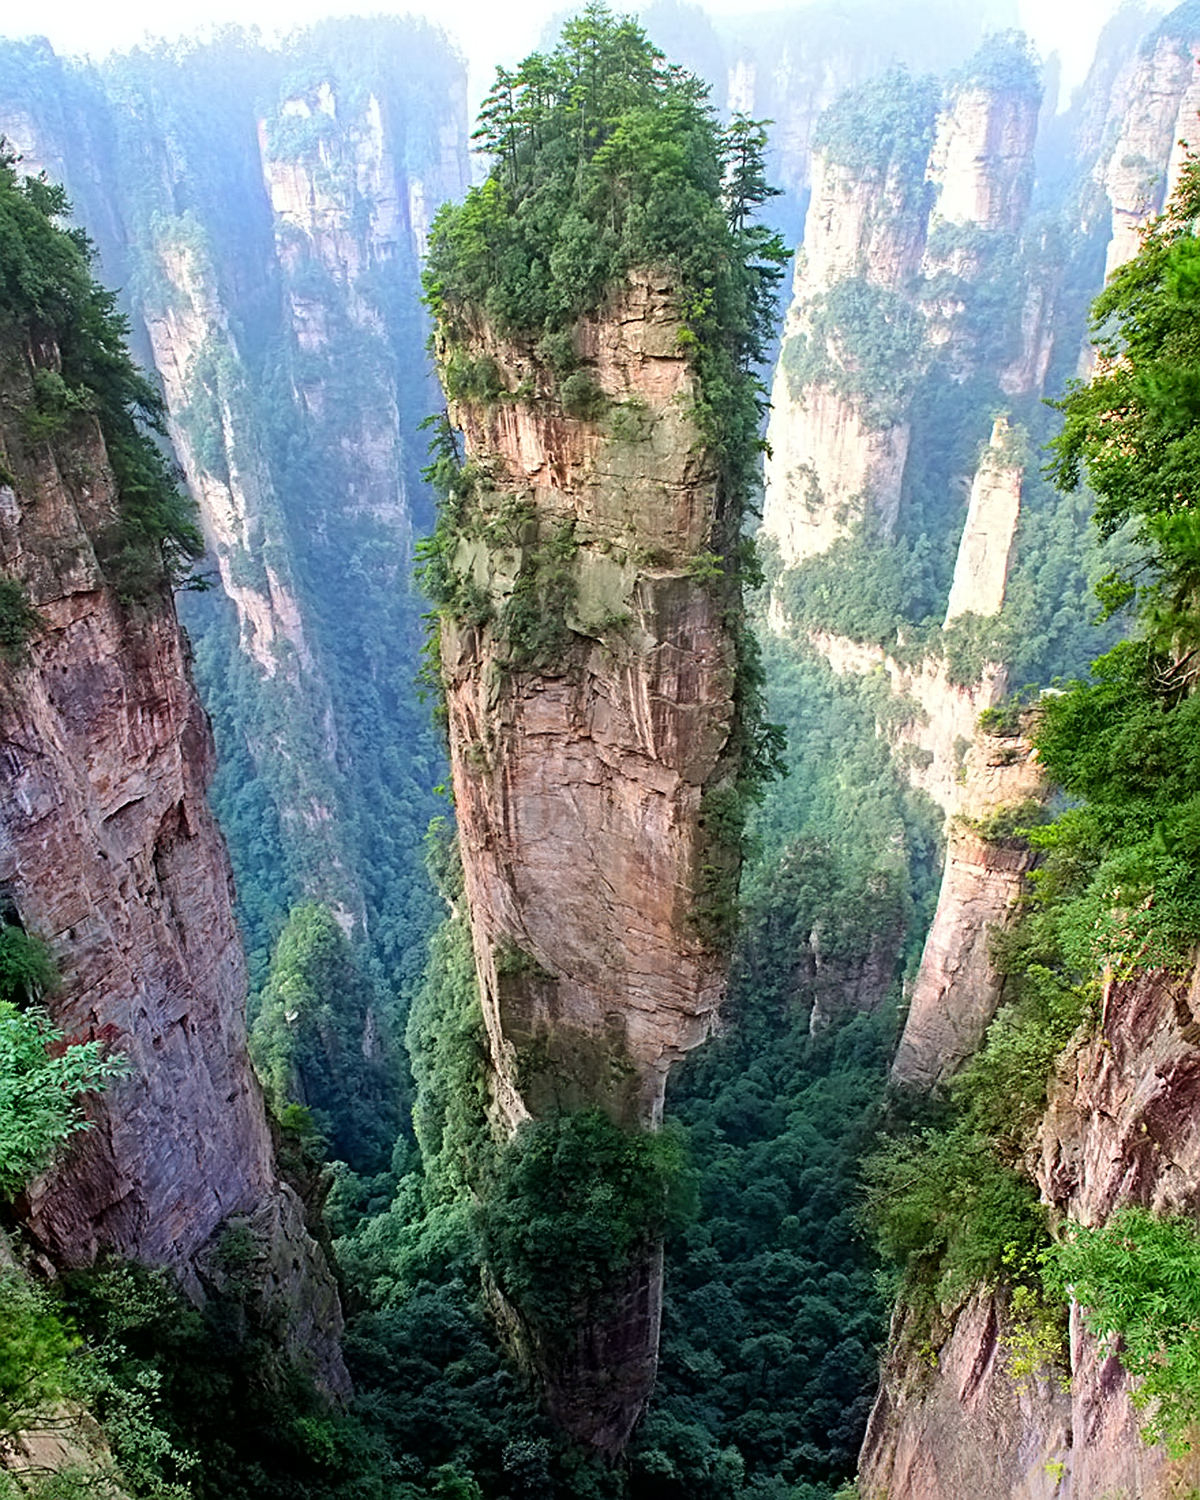 The Tianzi Mountians, China